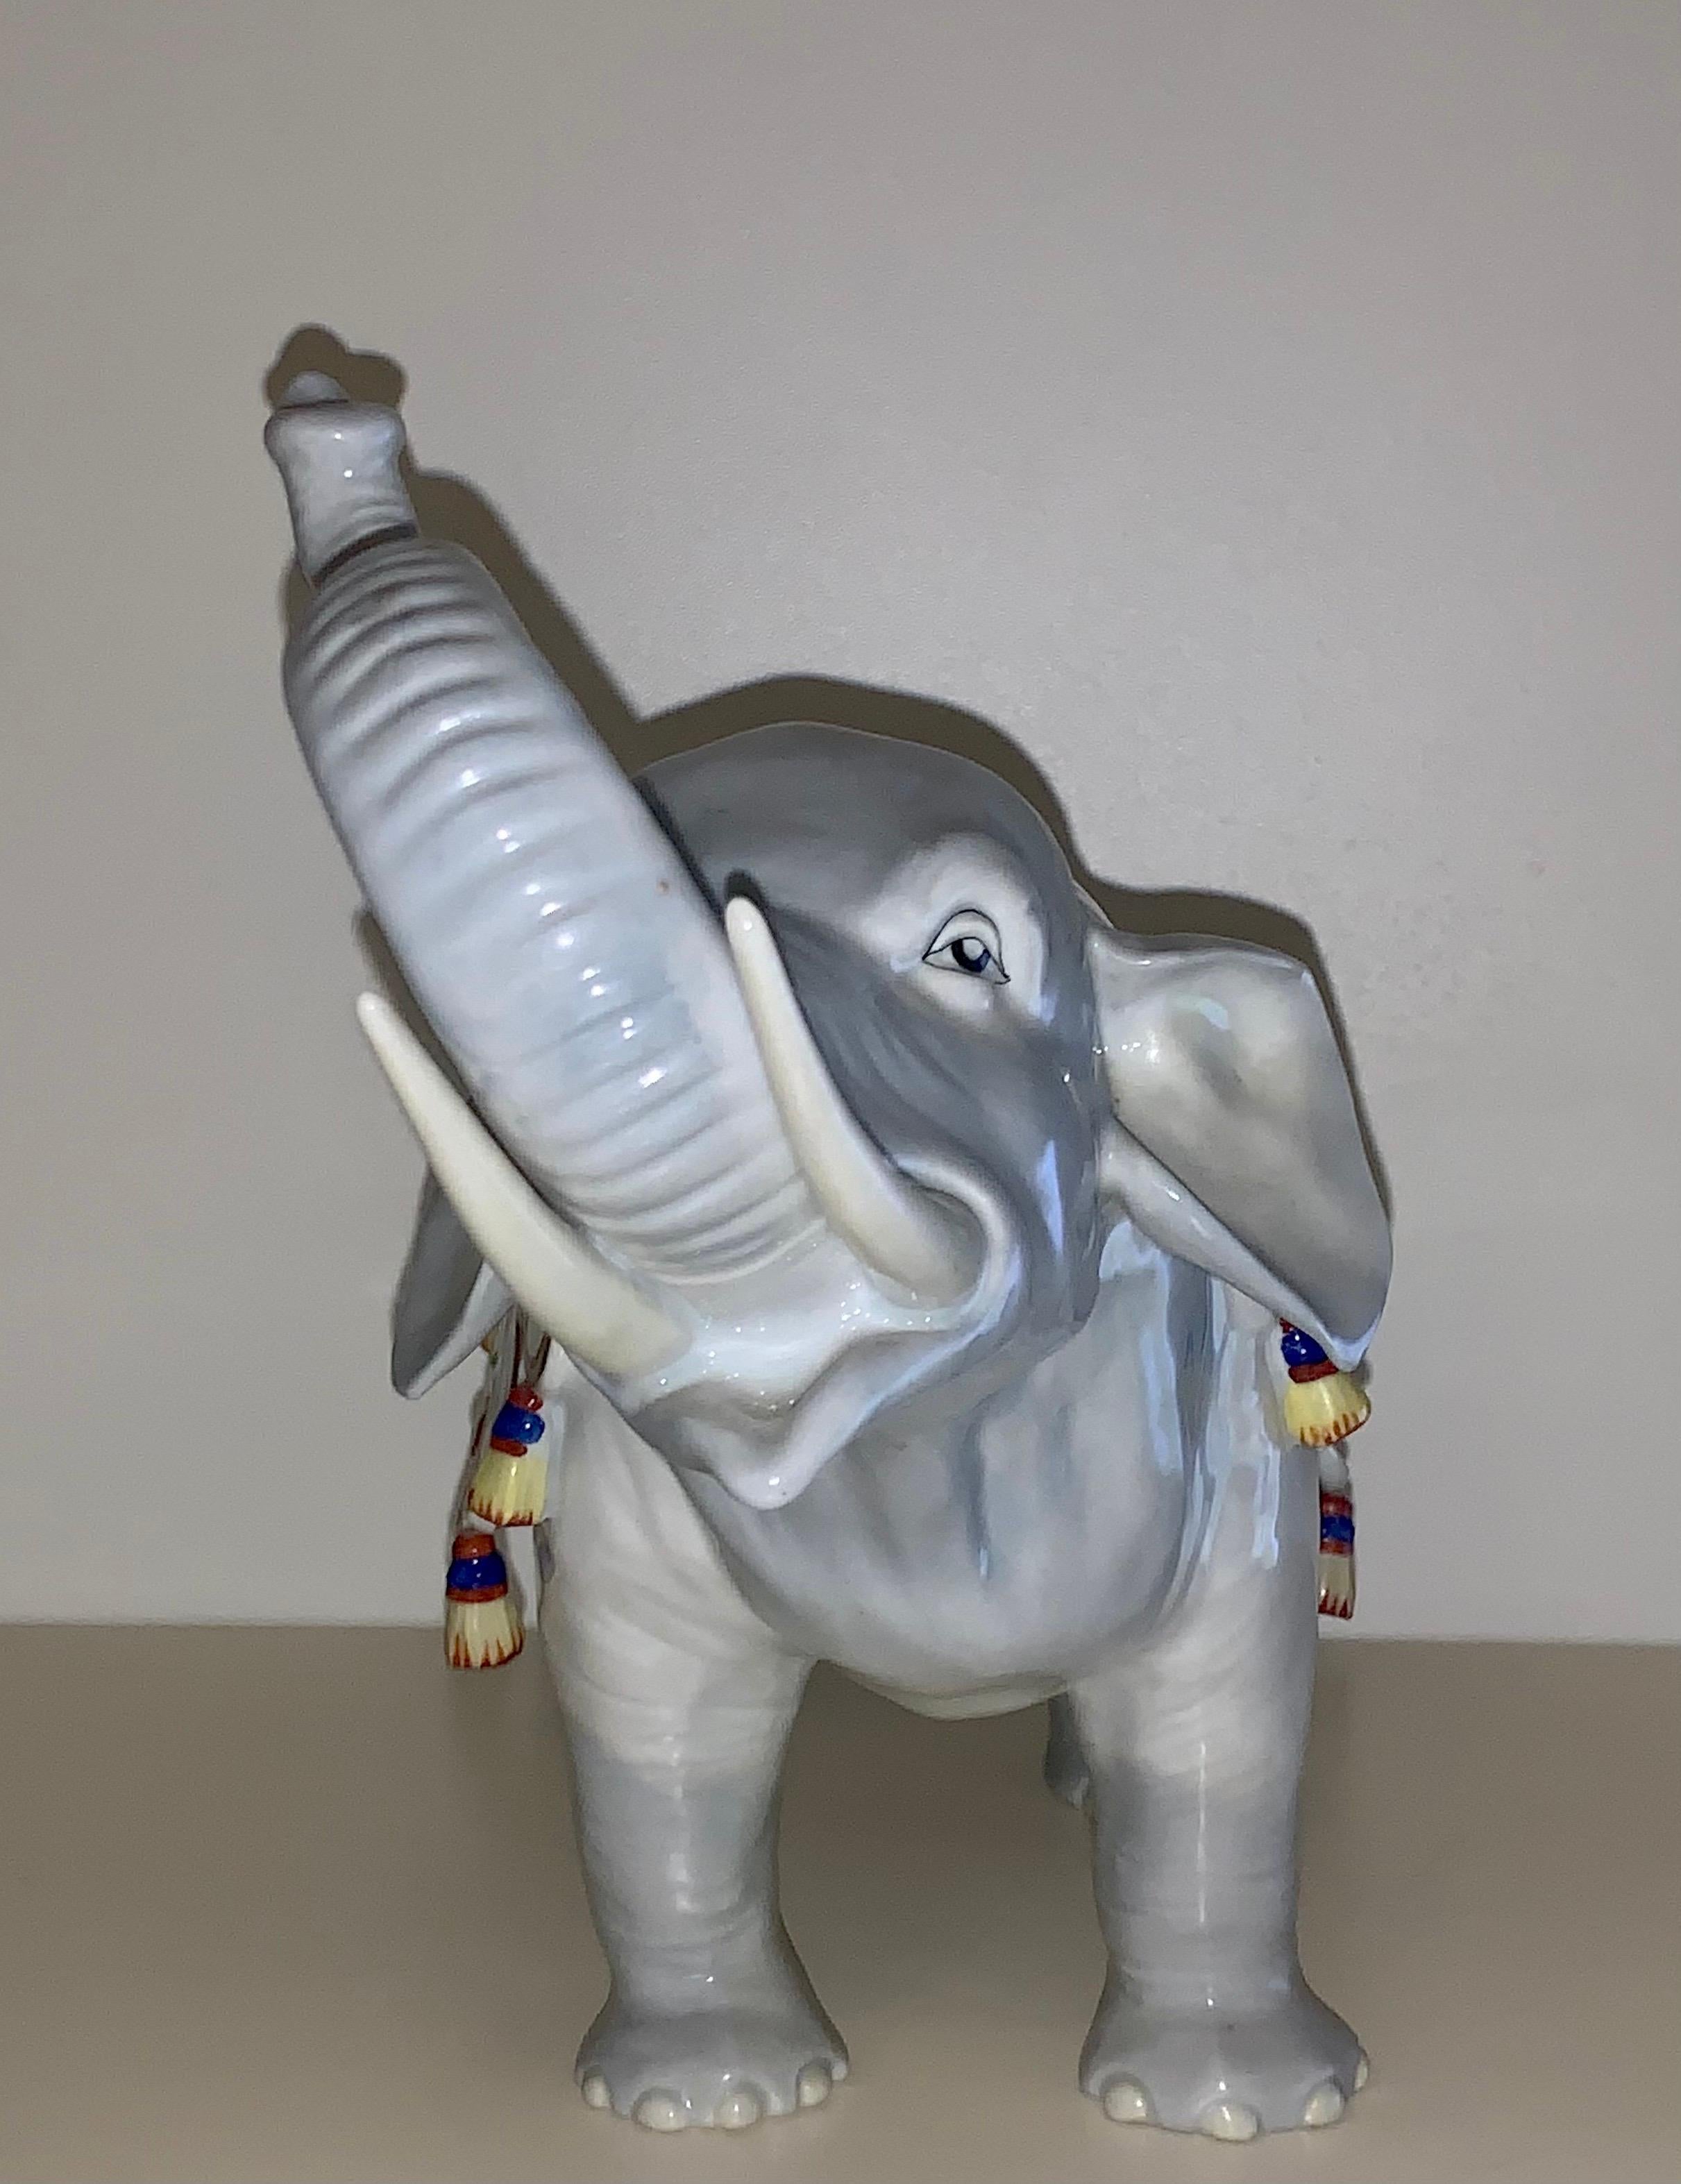 L'éléphant est représenté avec sa trompe levée et est drapé d'une couverture brodée et ornée de glands. Peint à la main et modelé avec de fins détails. Carl Thieme a fondé son usine de porcelaine à Potschappel, en Allemagne, en 1872. Après avoir été